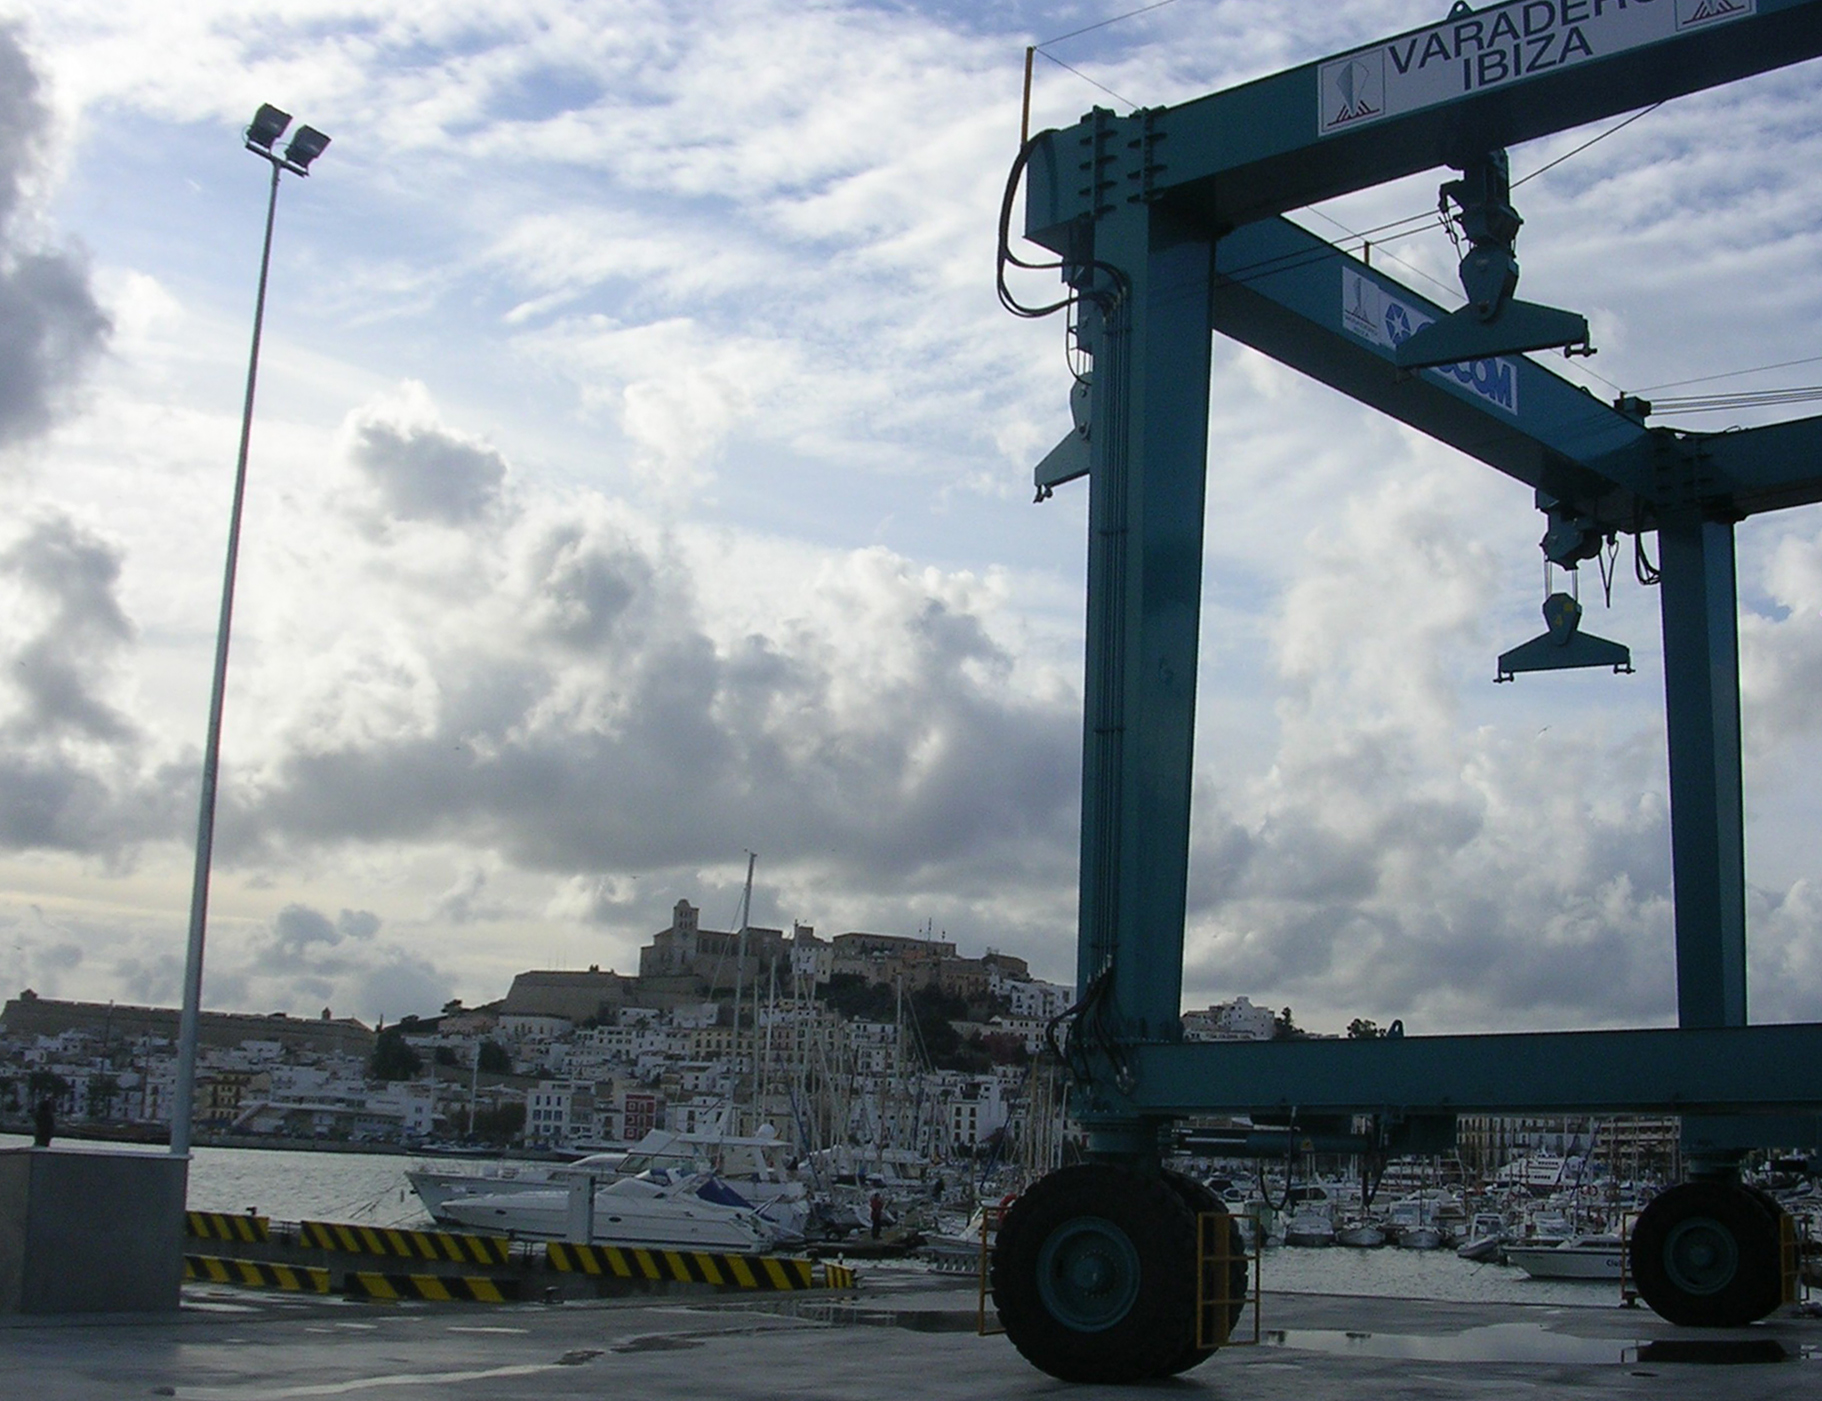 La empresa Varadero Ibiza será bonificada por buenas prácticas ambientales  